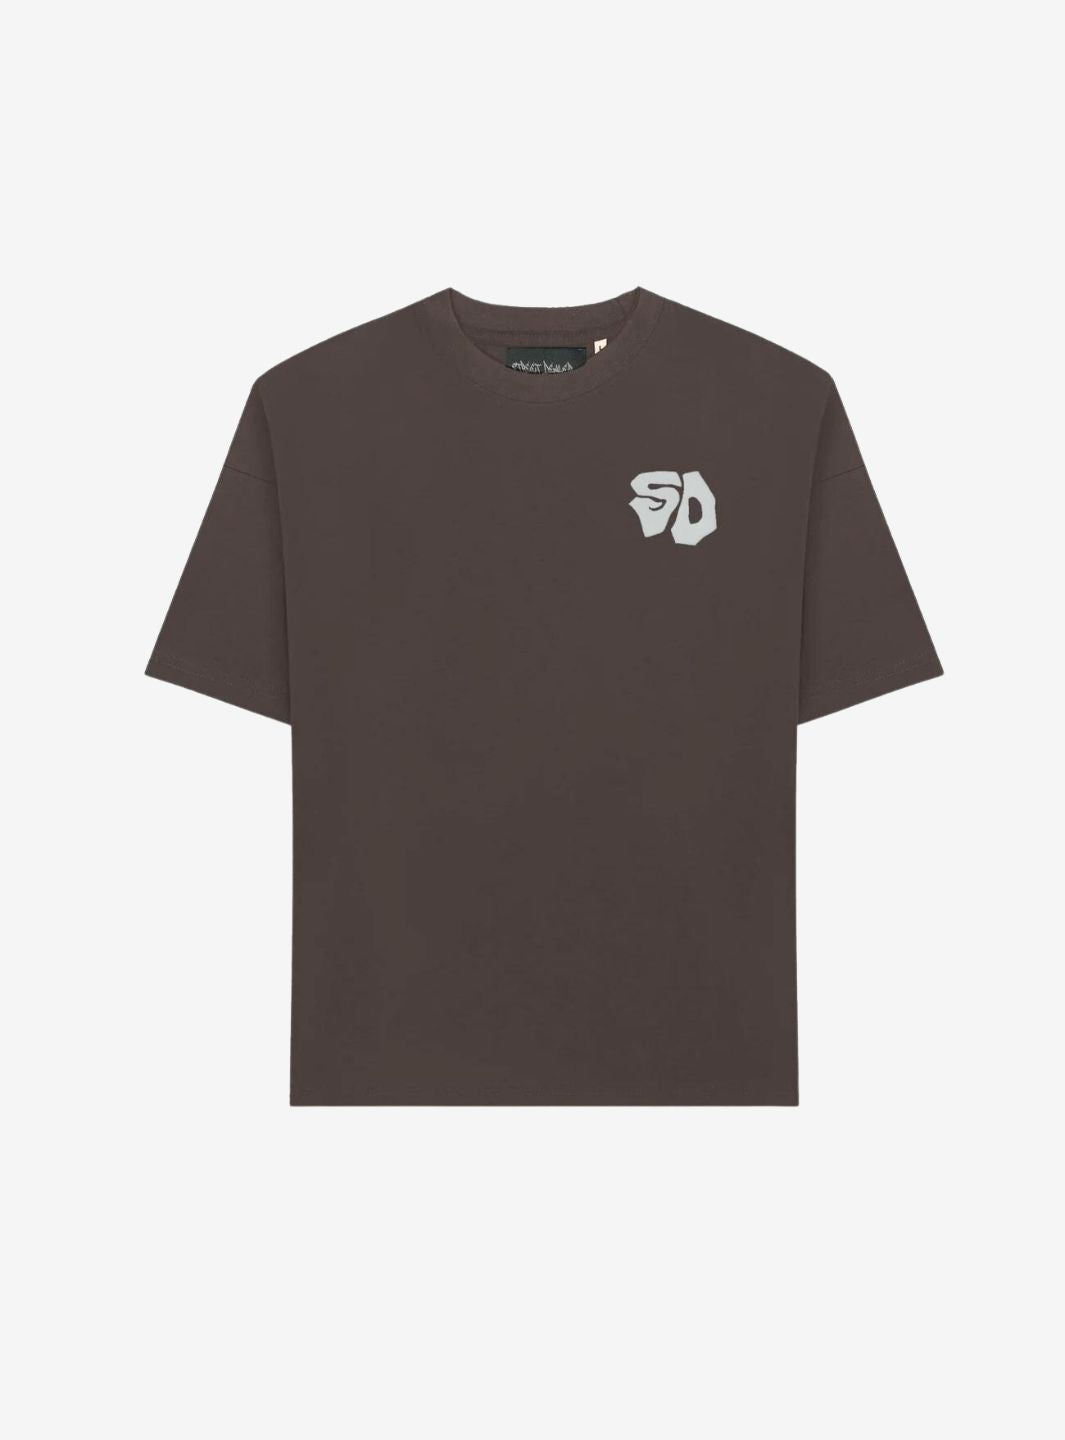 Street Dealer T-Shirt Brown